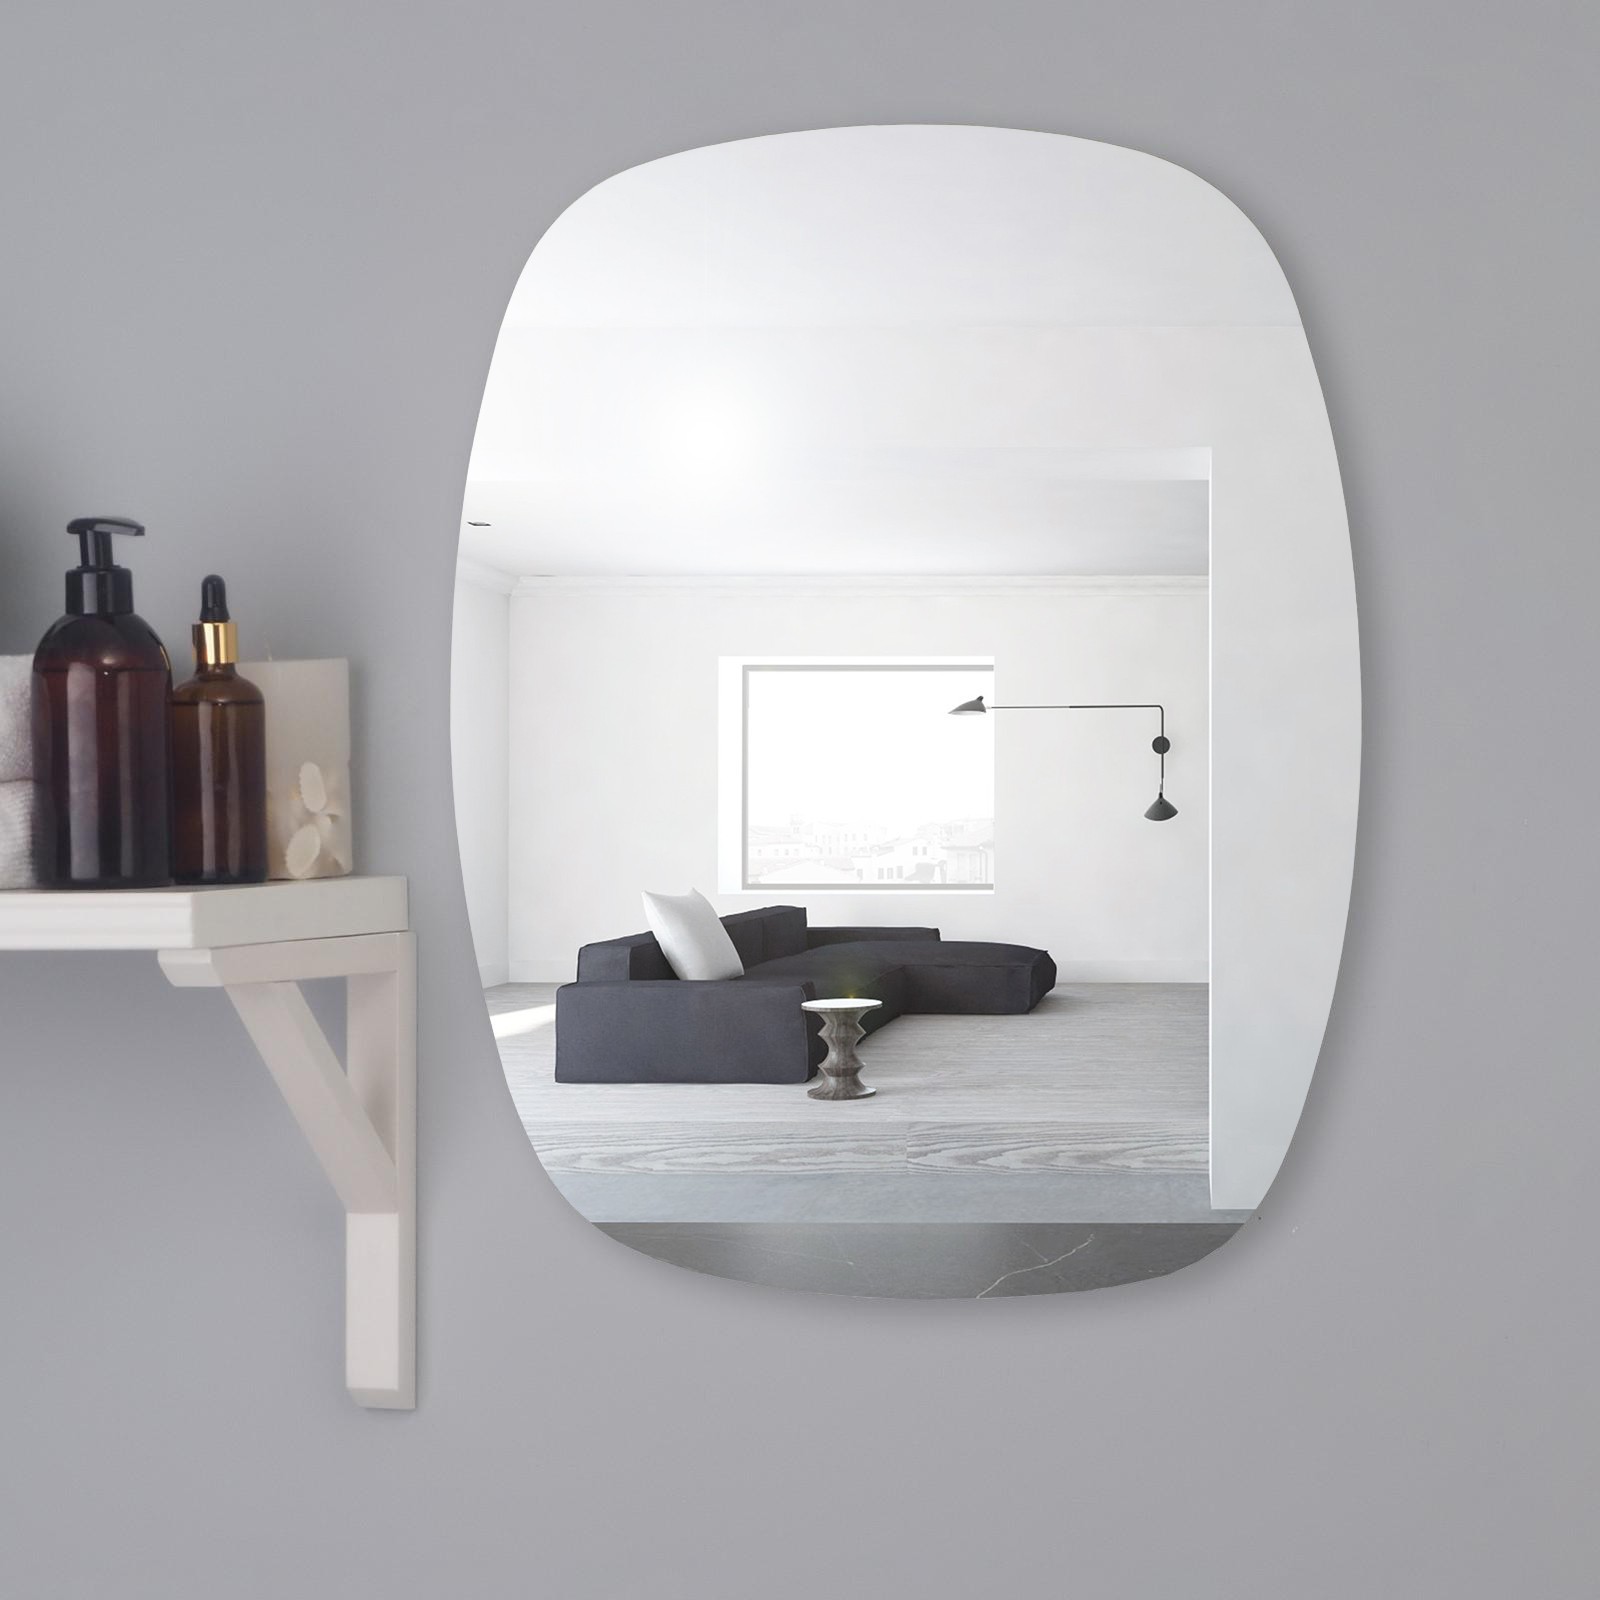 Зеркало Mirox. настенное, 4251805, 50x60 см настенное зеркало берже 24 105 белый ясень